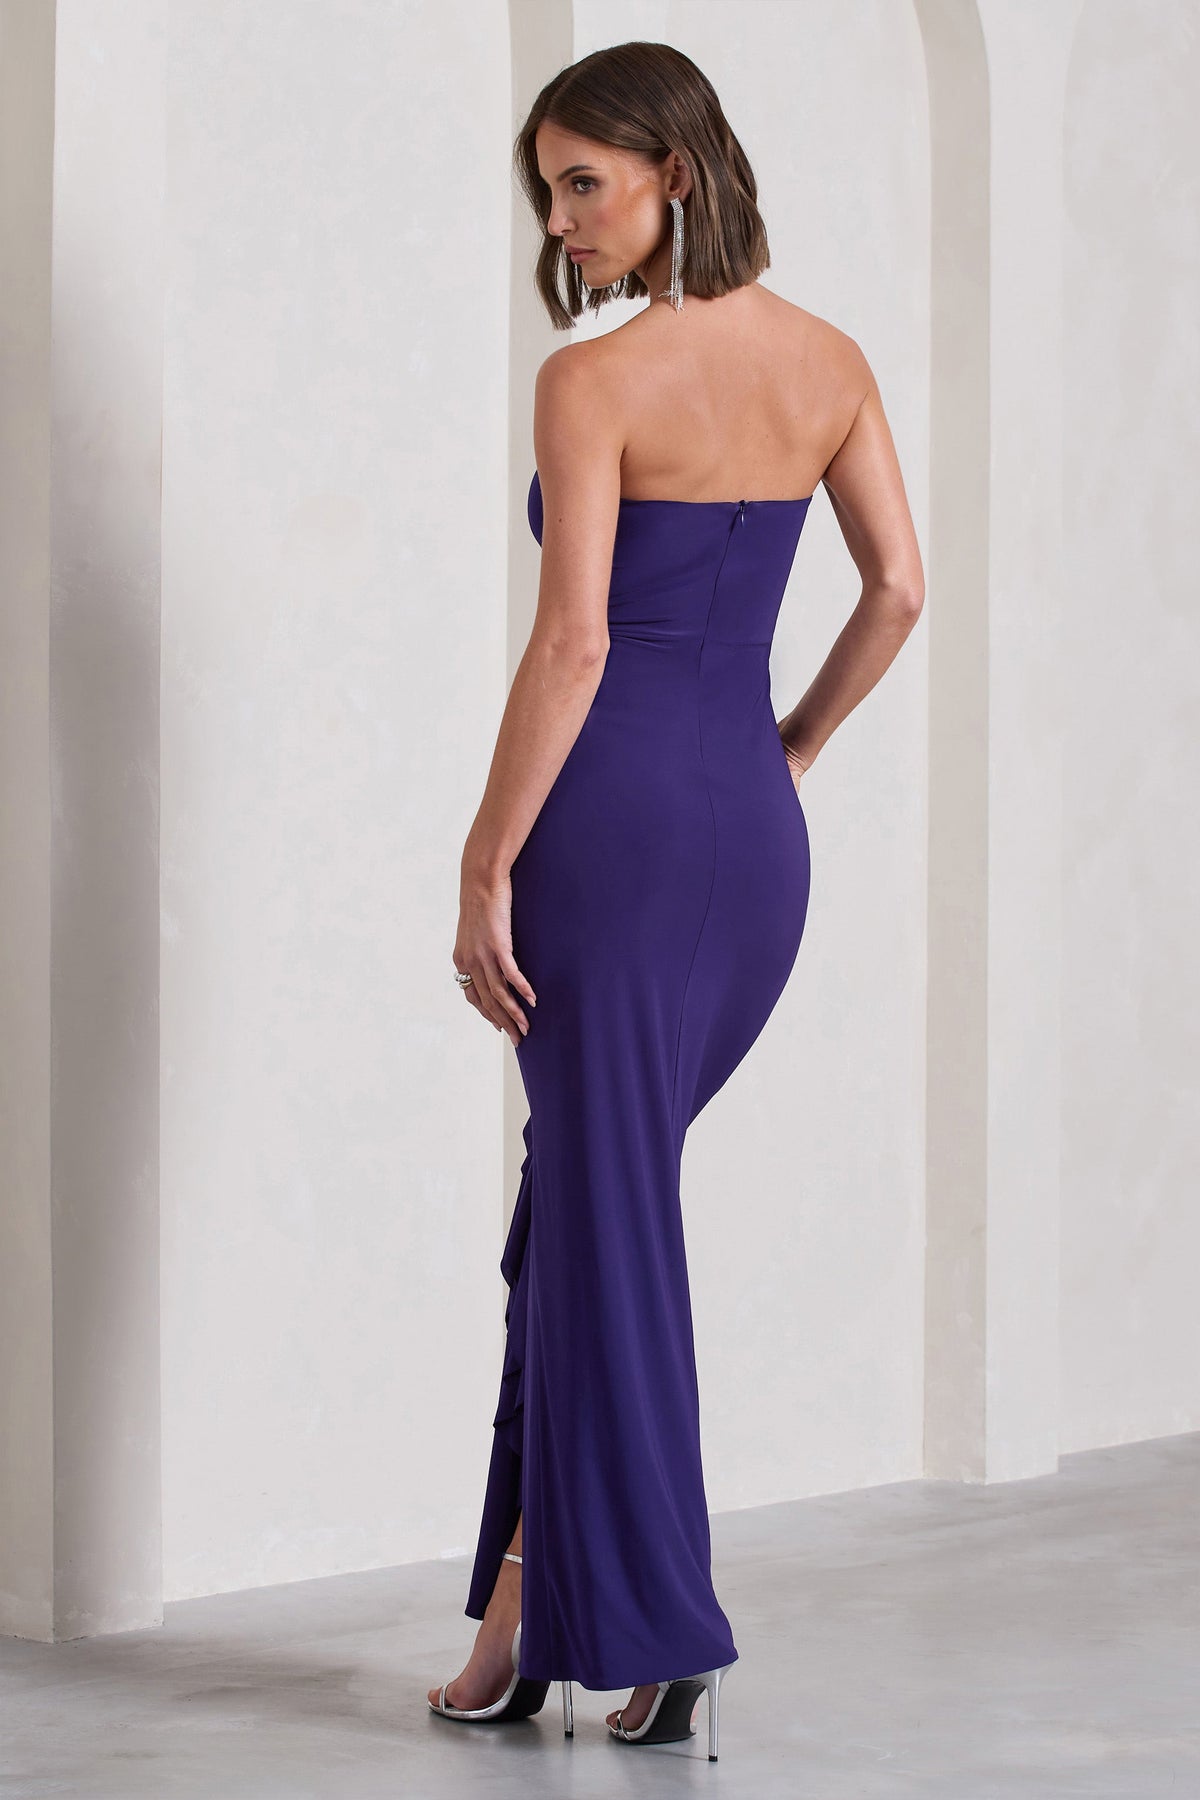 Susan Purple Bandeau Maxi Dress With Ruffled Splits – Club L 